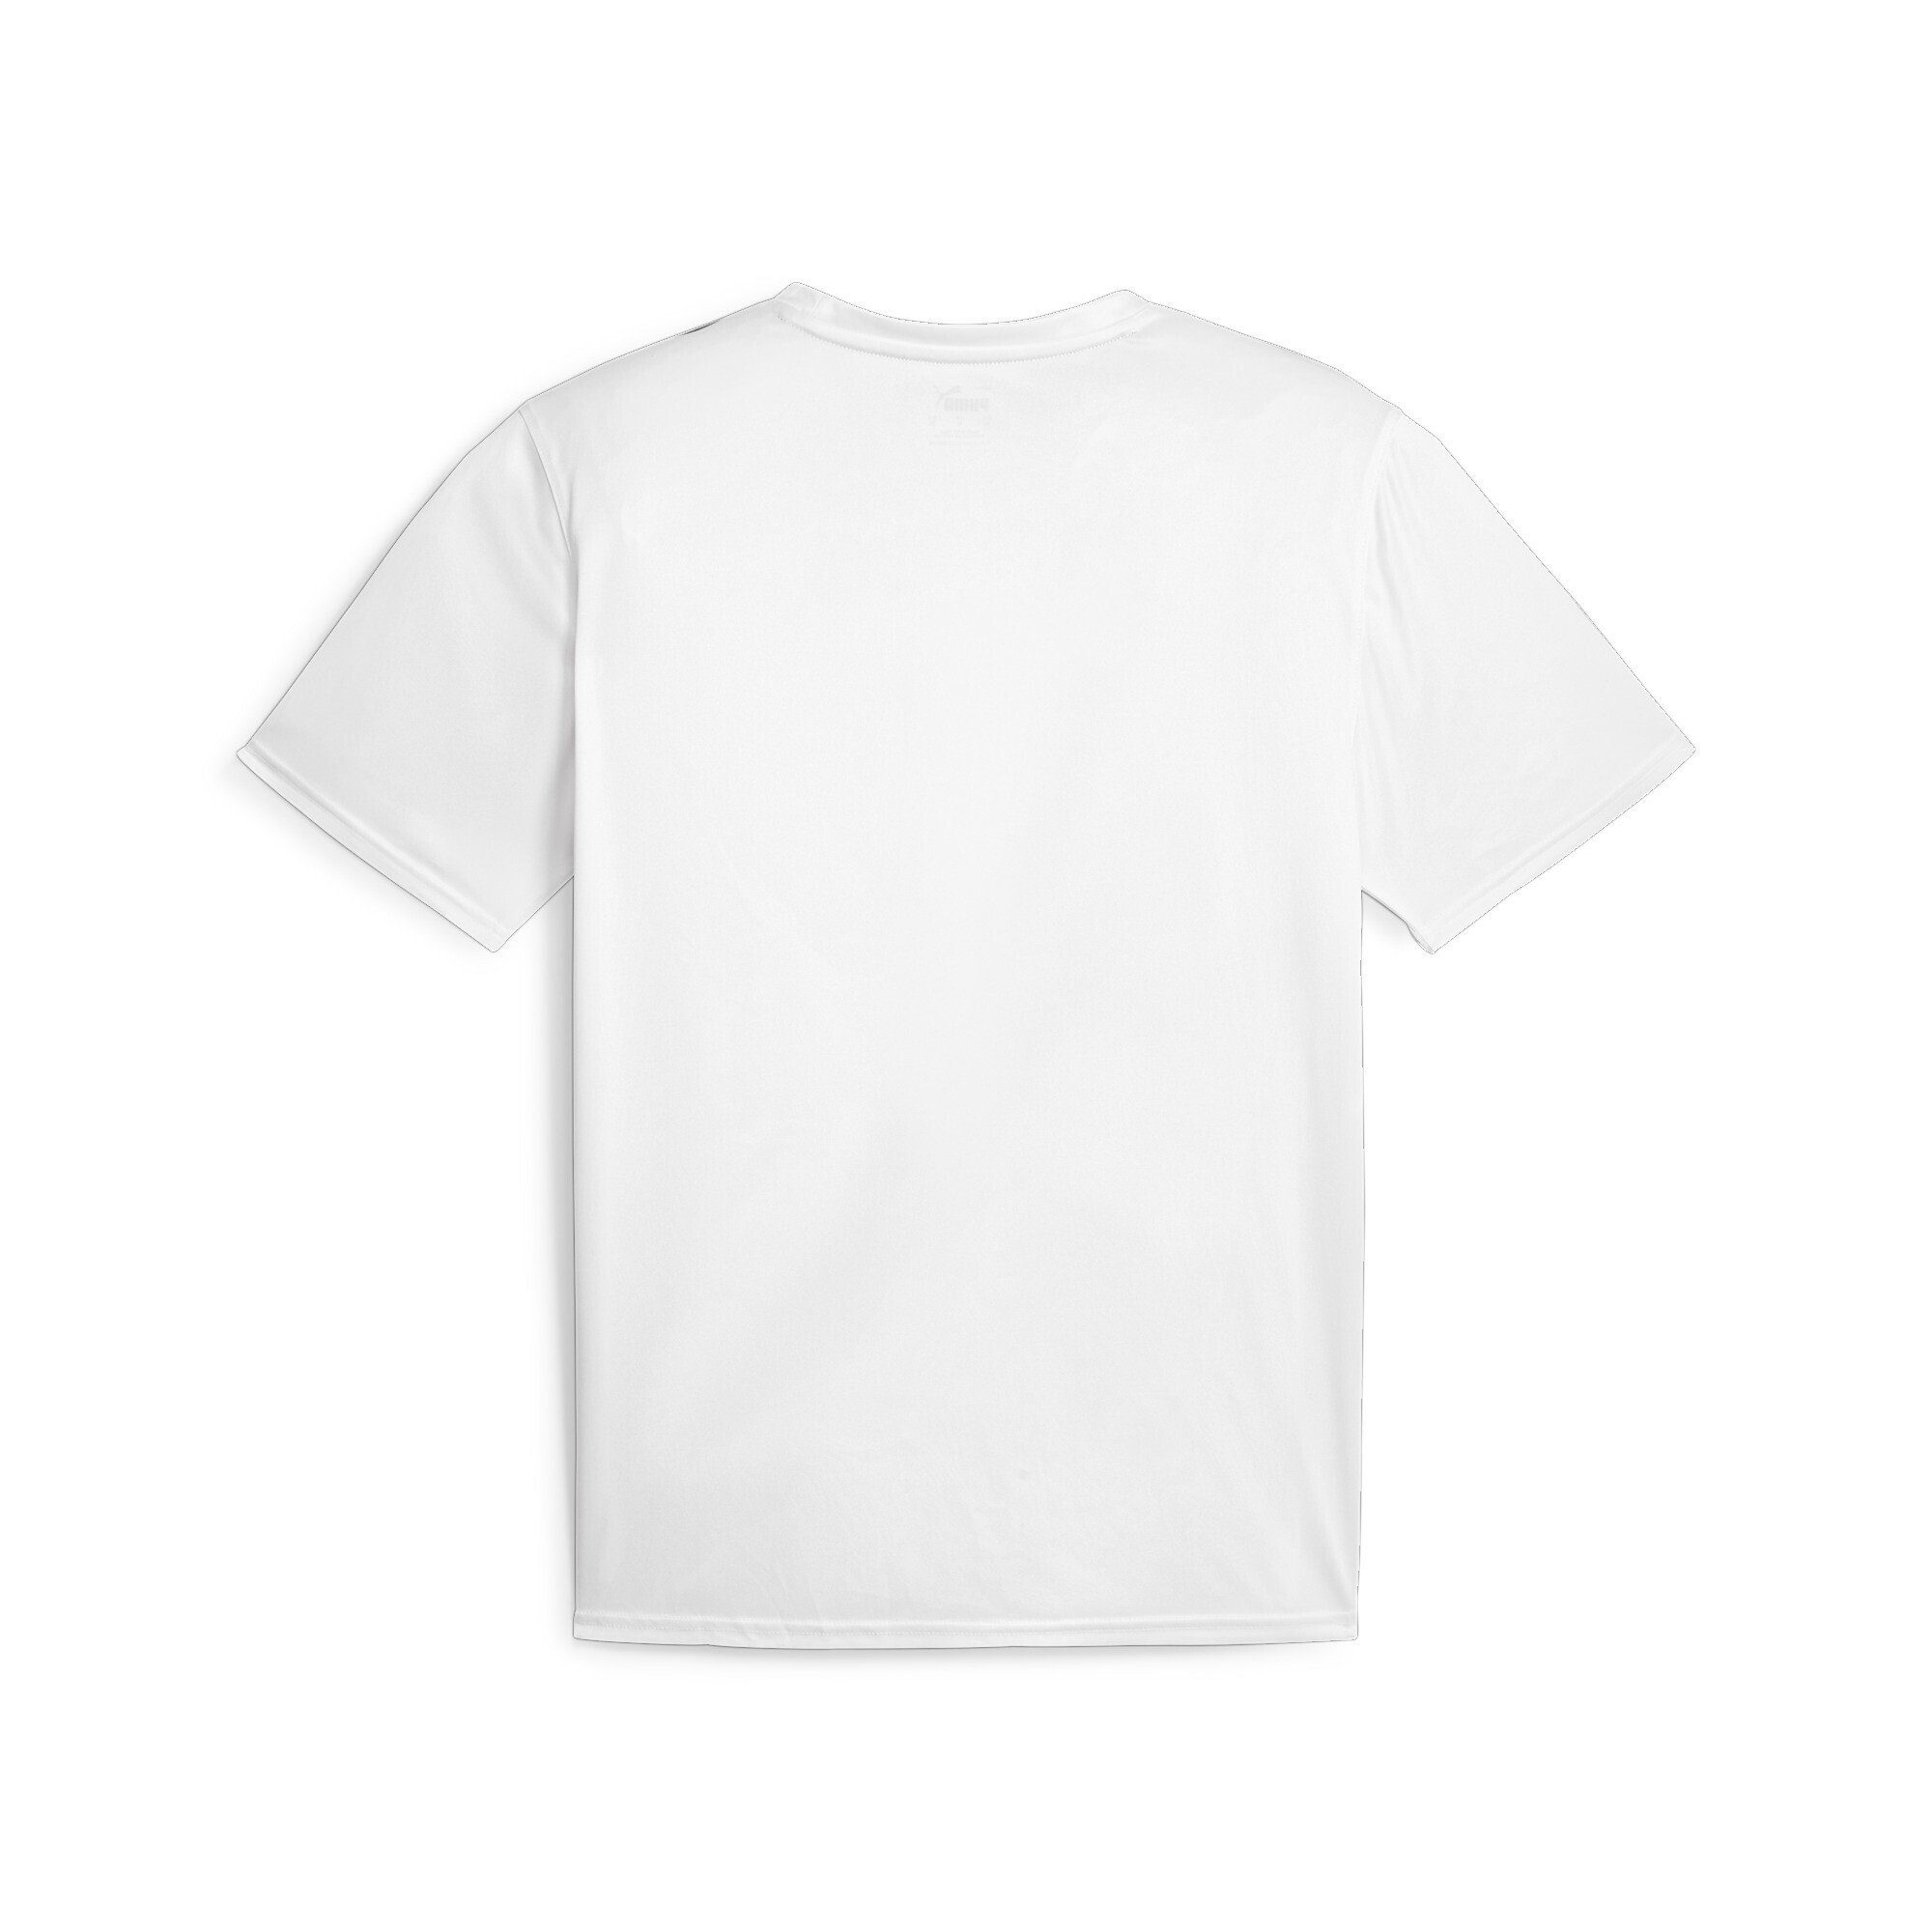 Taped Herren PUMA White Trainings-T-Shirt FIT PUMA Trainingsshirt